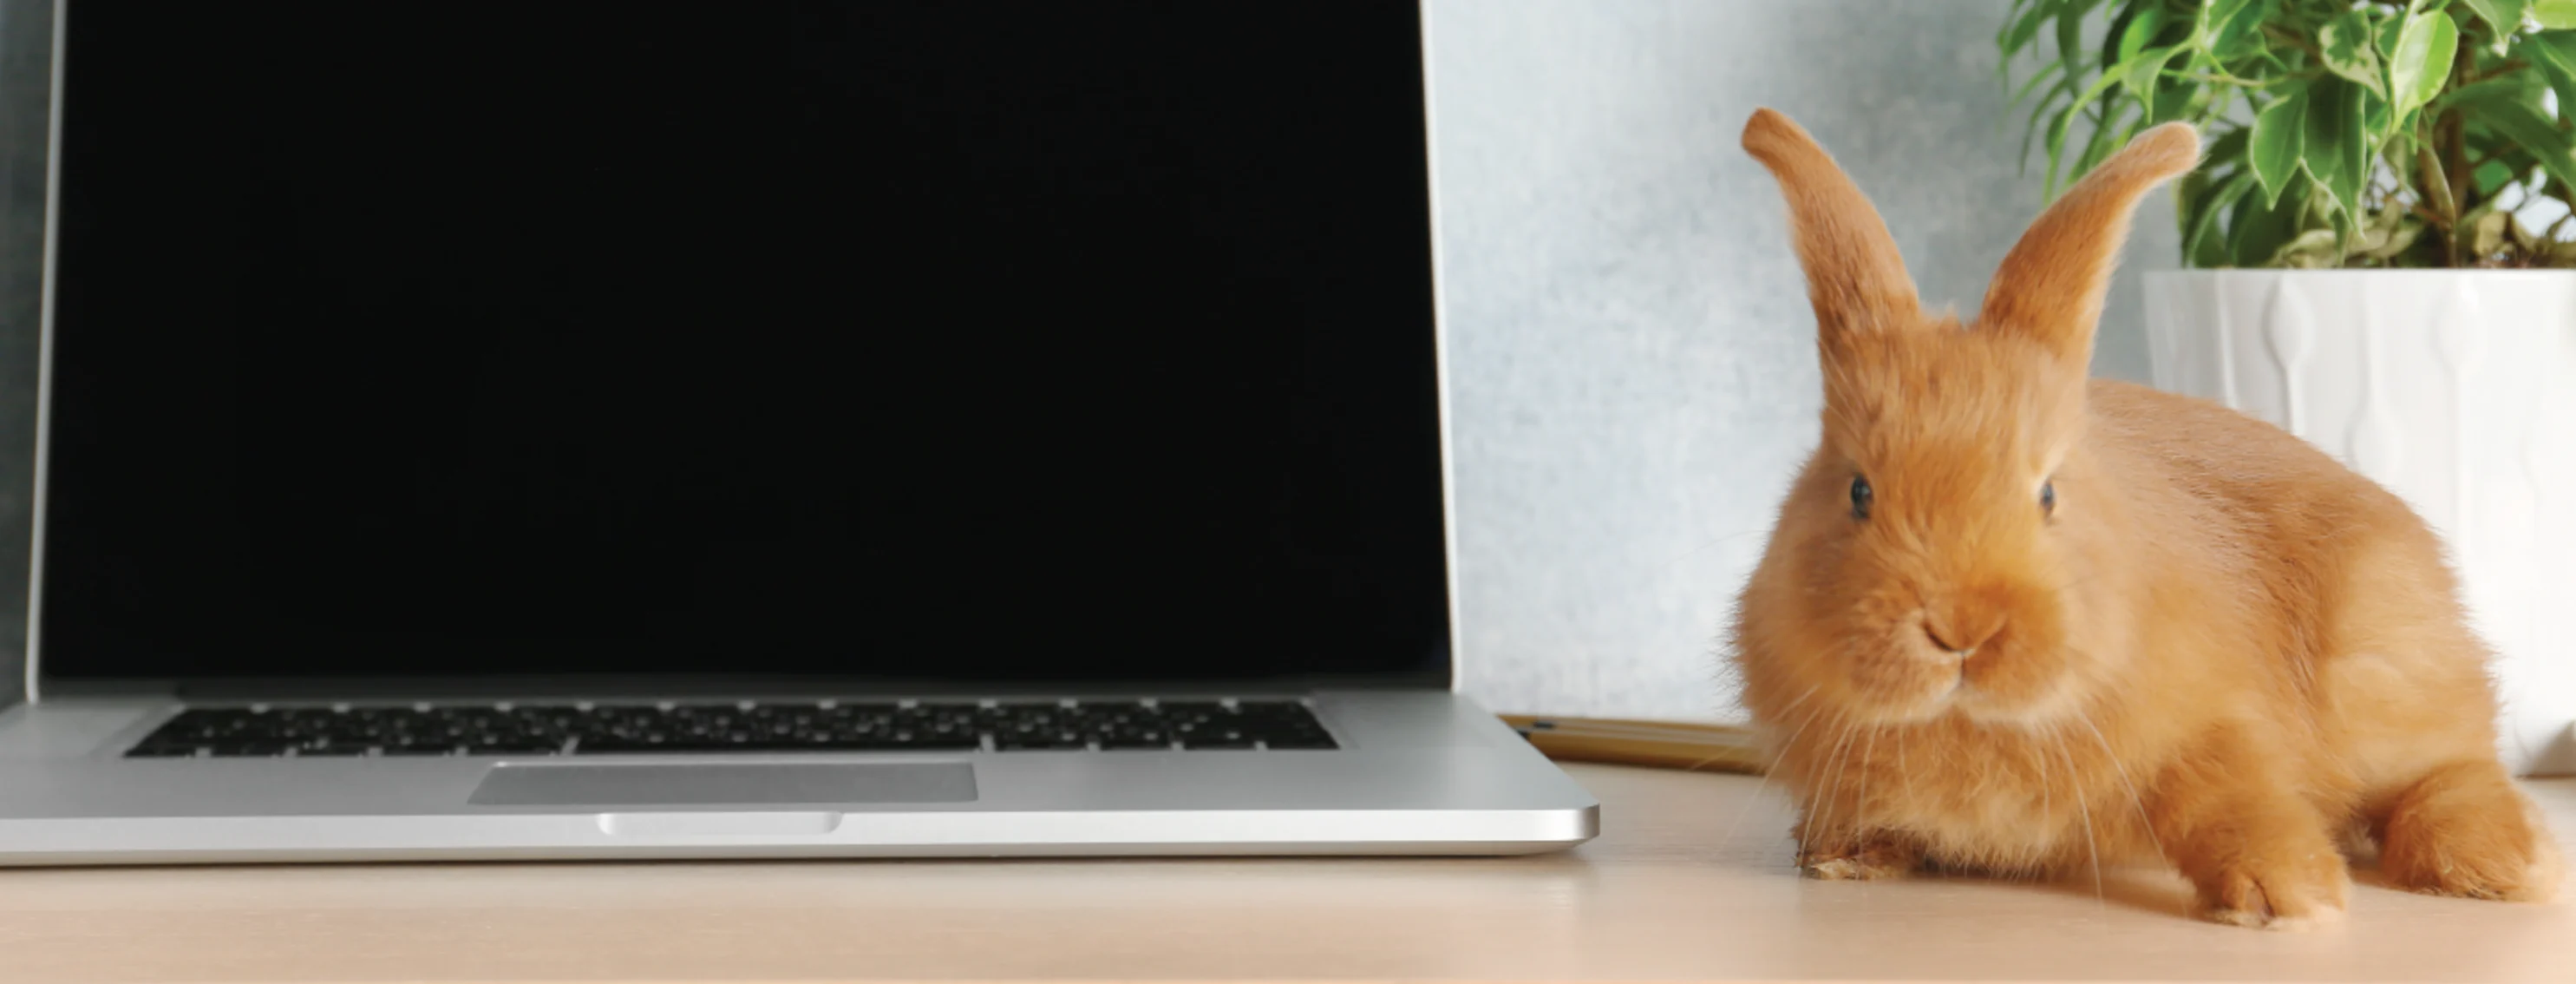 Rabbit on laptop on desk